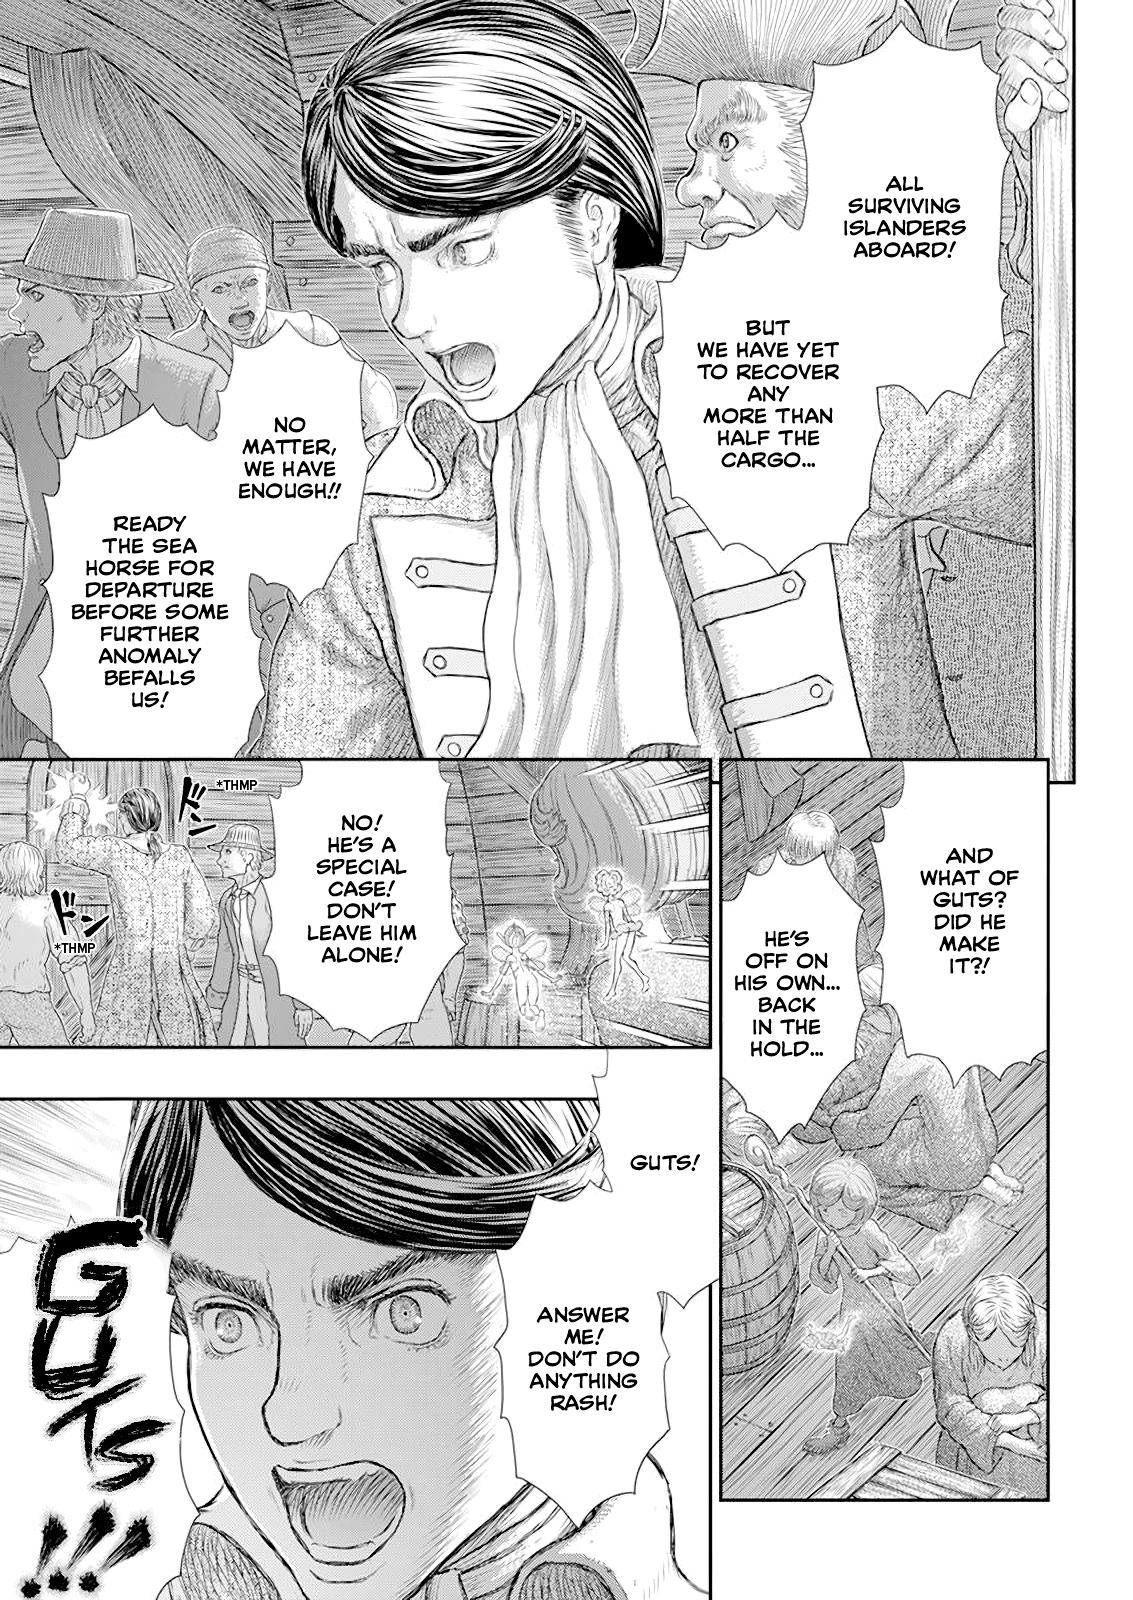 Berserk Manga Chapter 370 image 12